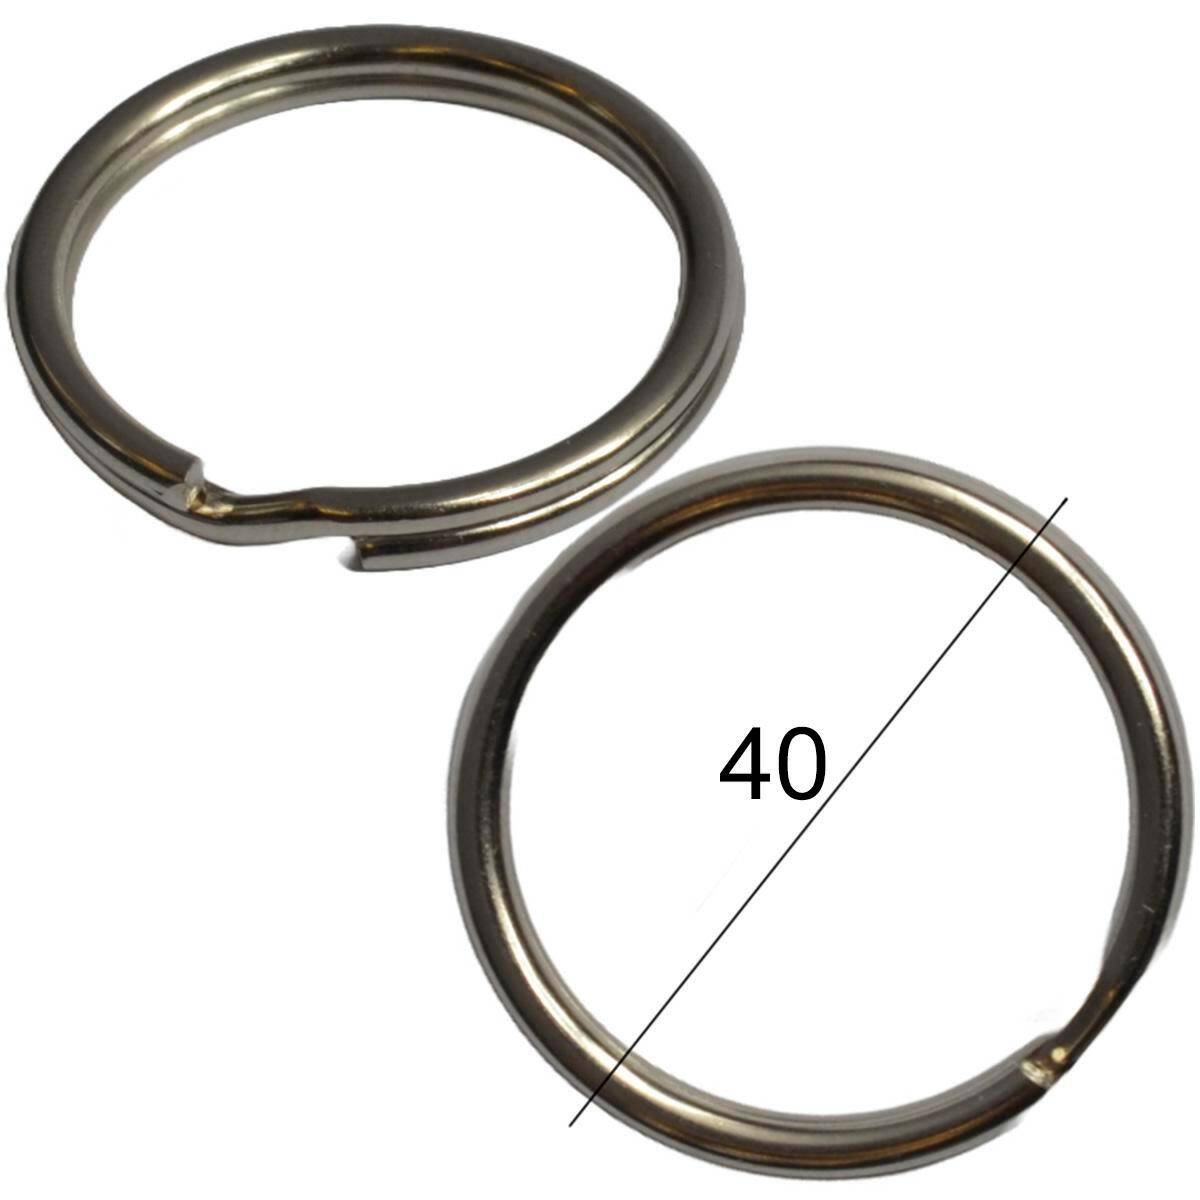 Einfache schlüsselanhänger - 40 mm